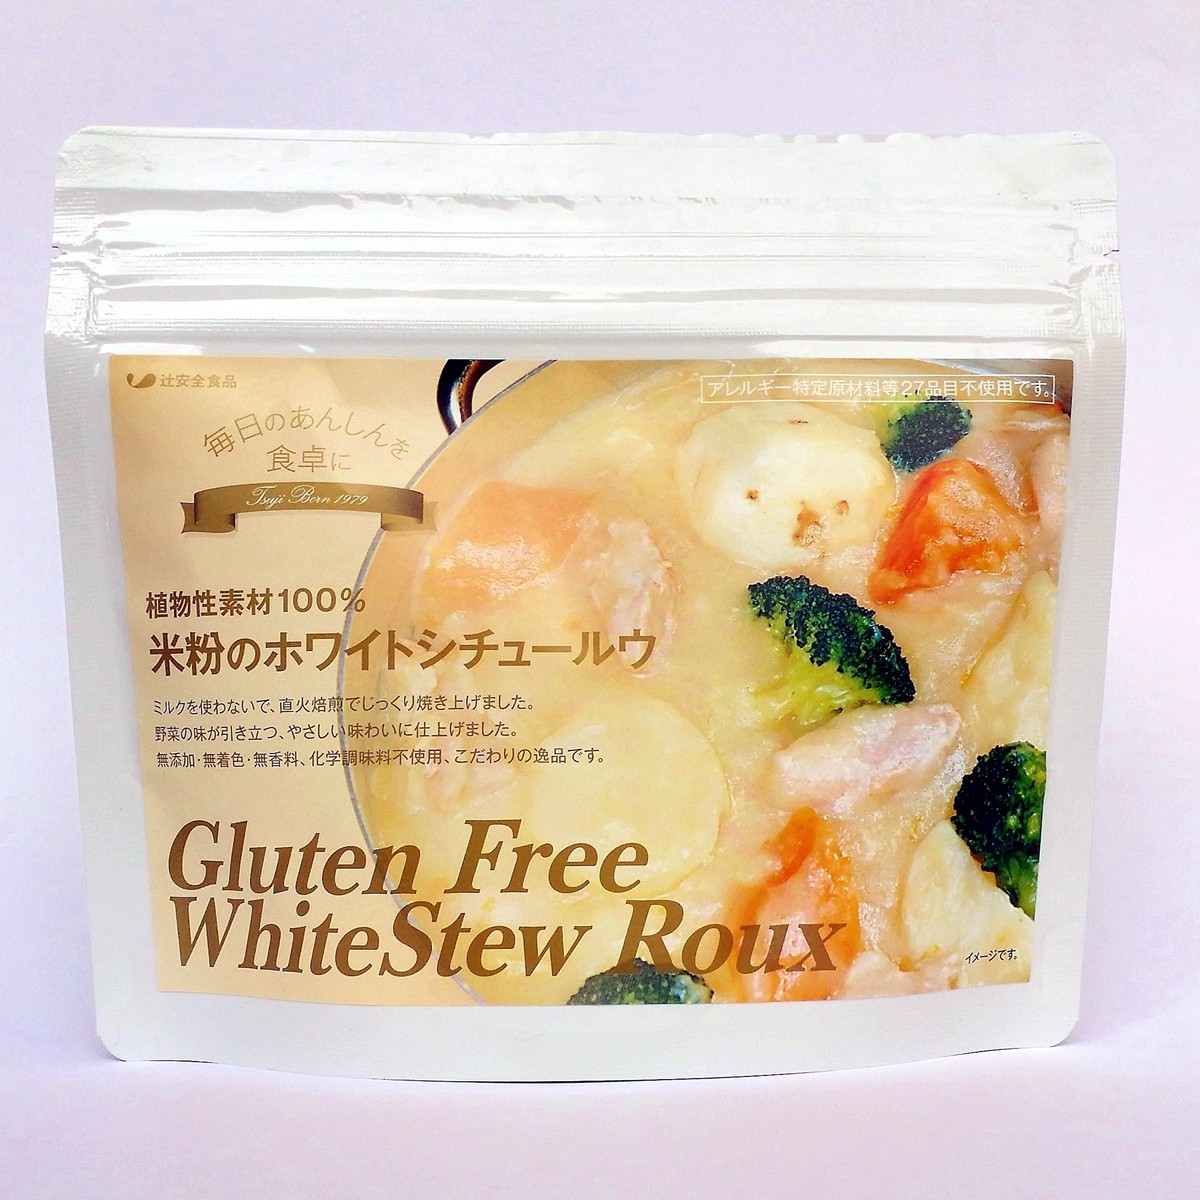 ., egg, wheat un- use plant . material 100% rice flour. white stew ruu stew cream 150g